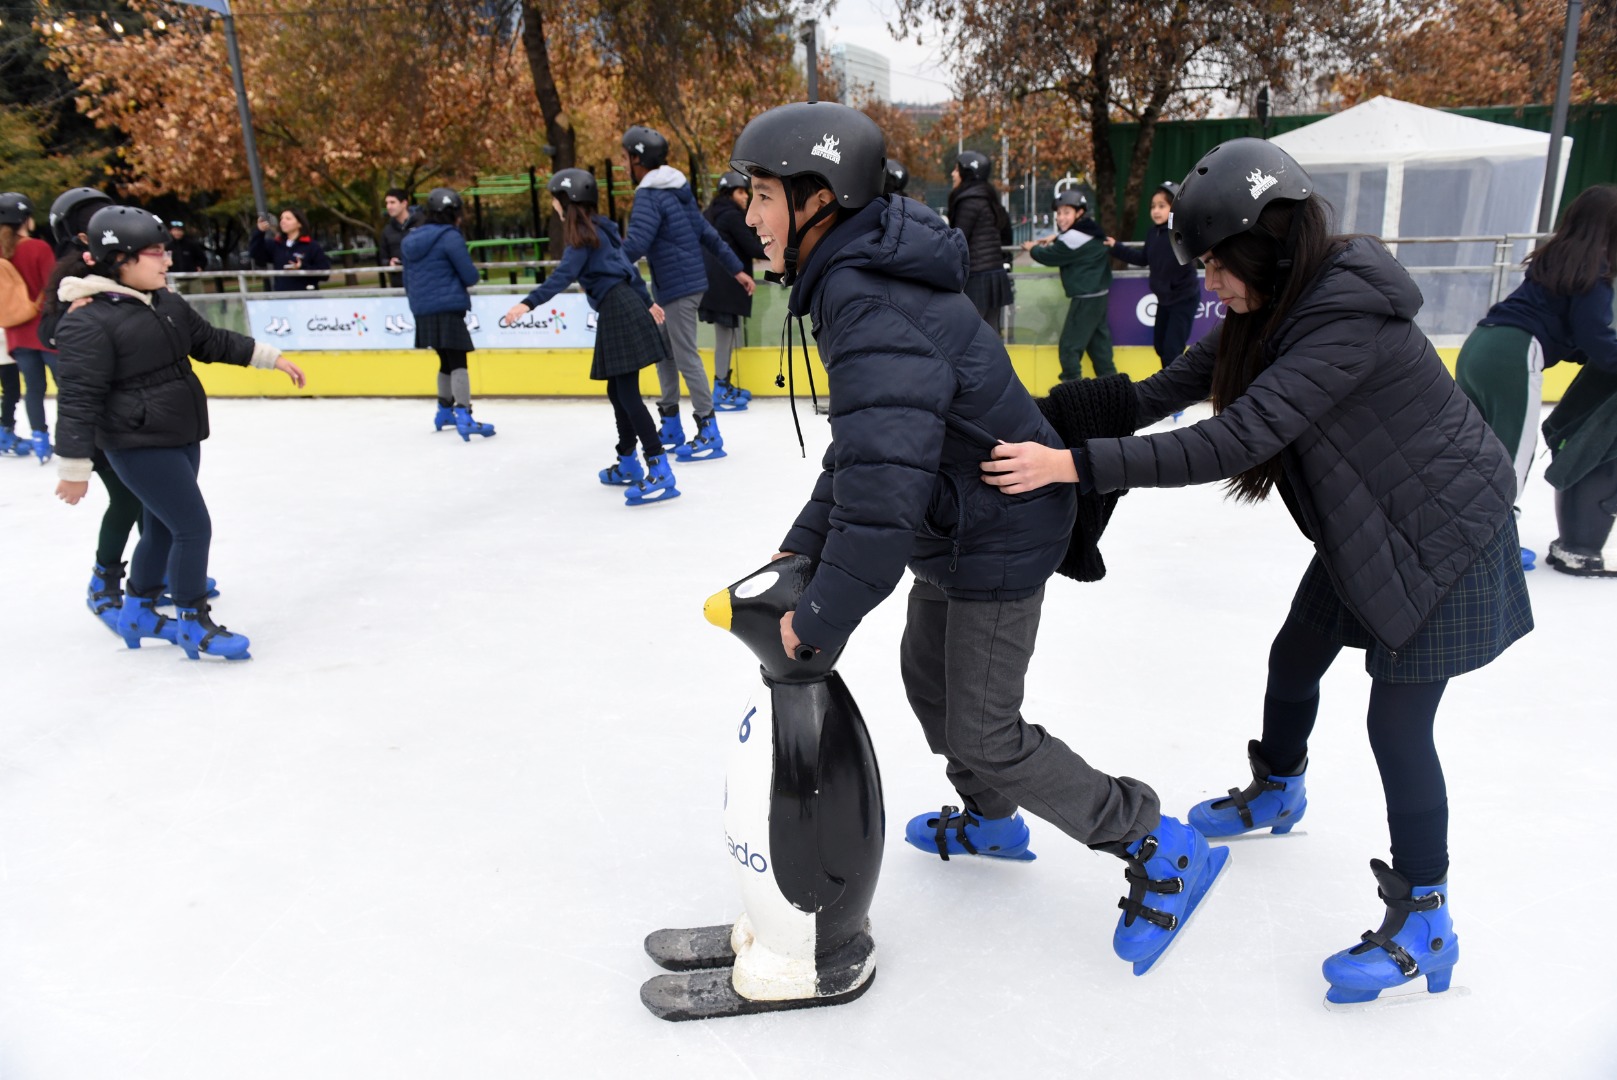 Pista de patinaje en hielo en Parque Araucano